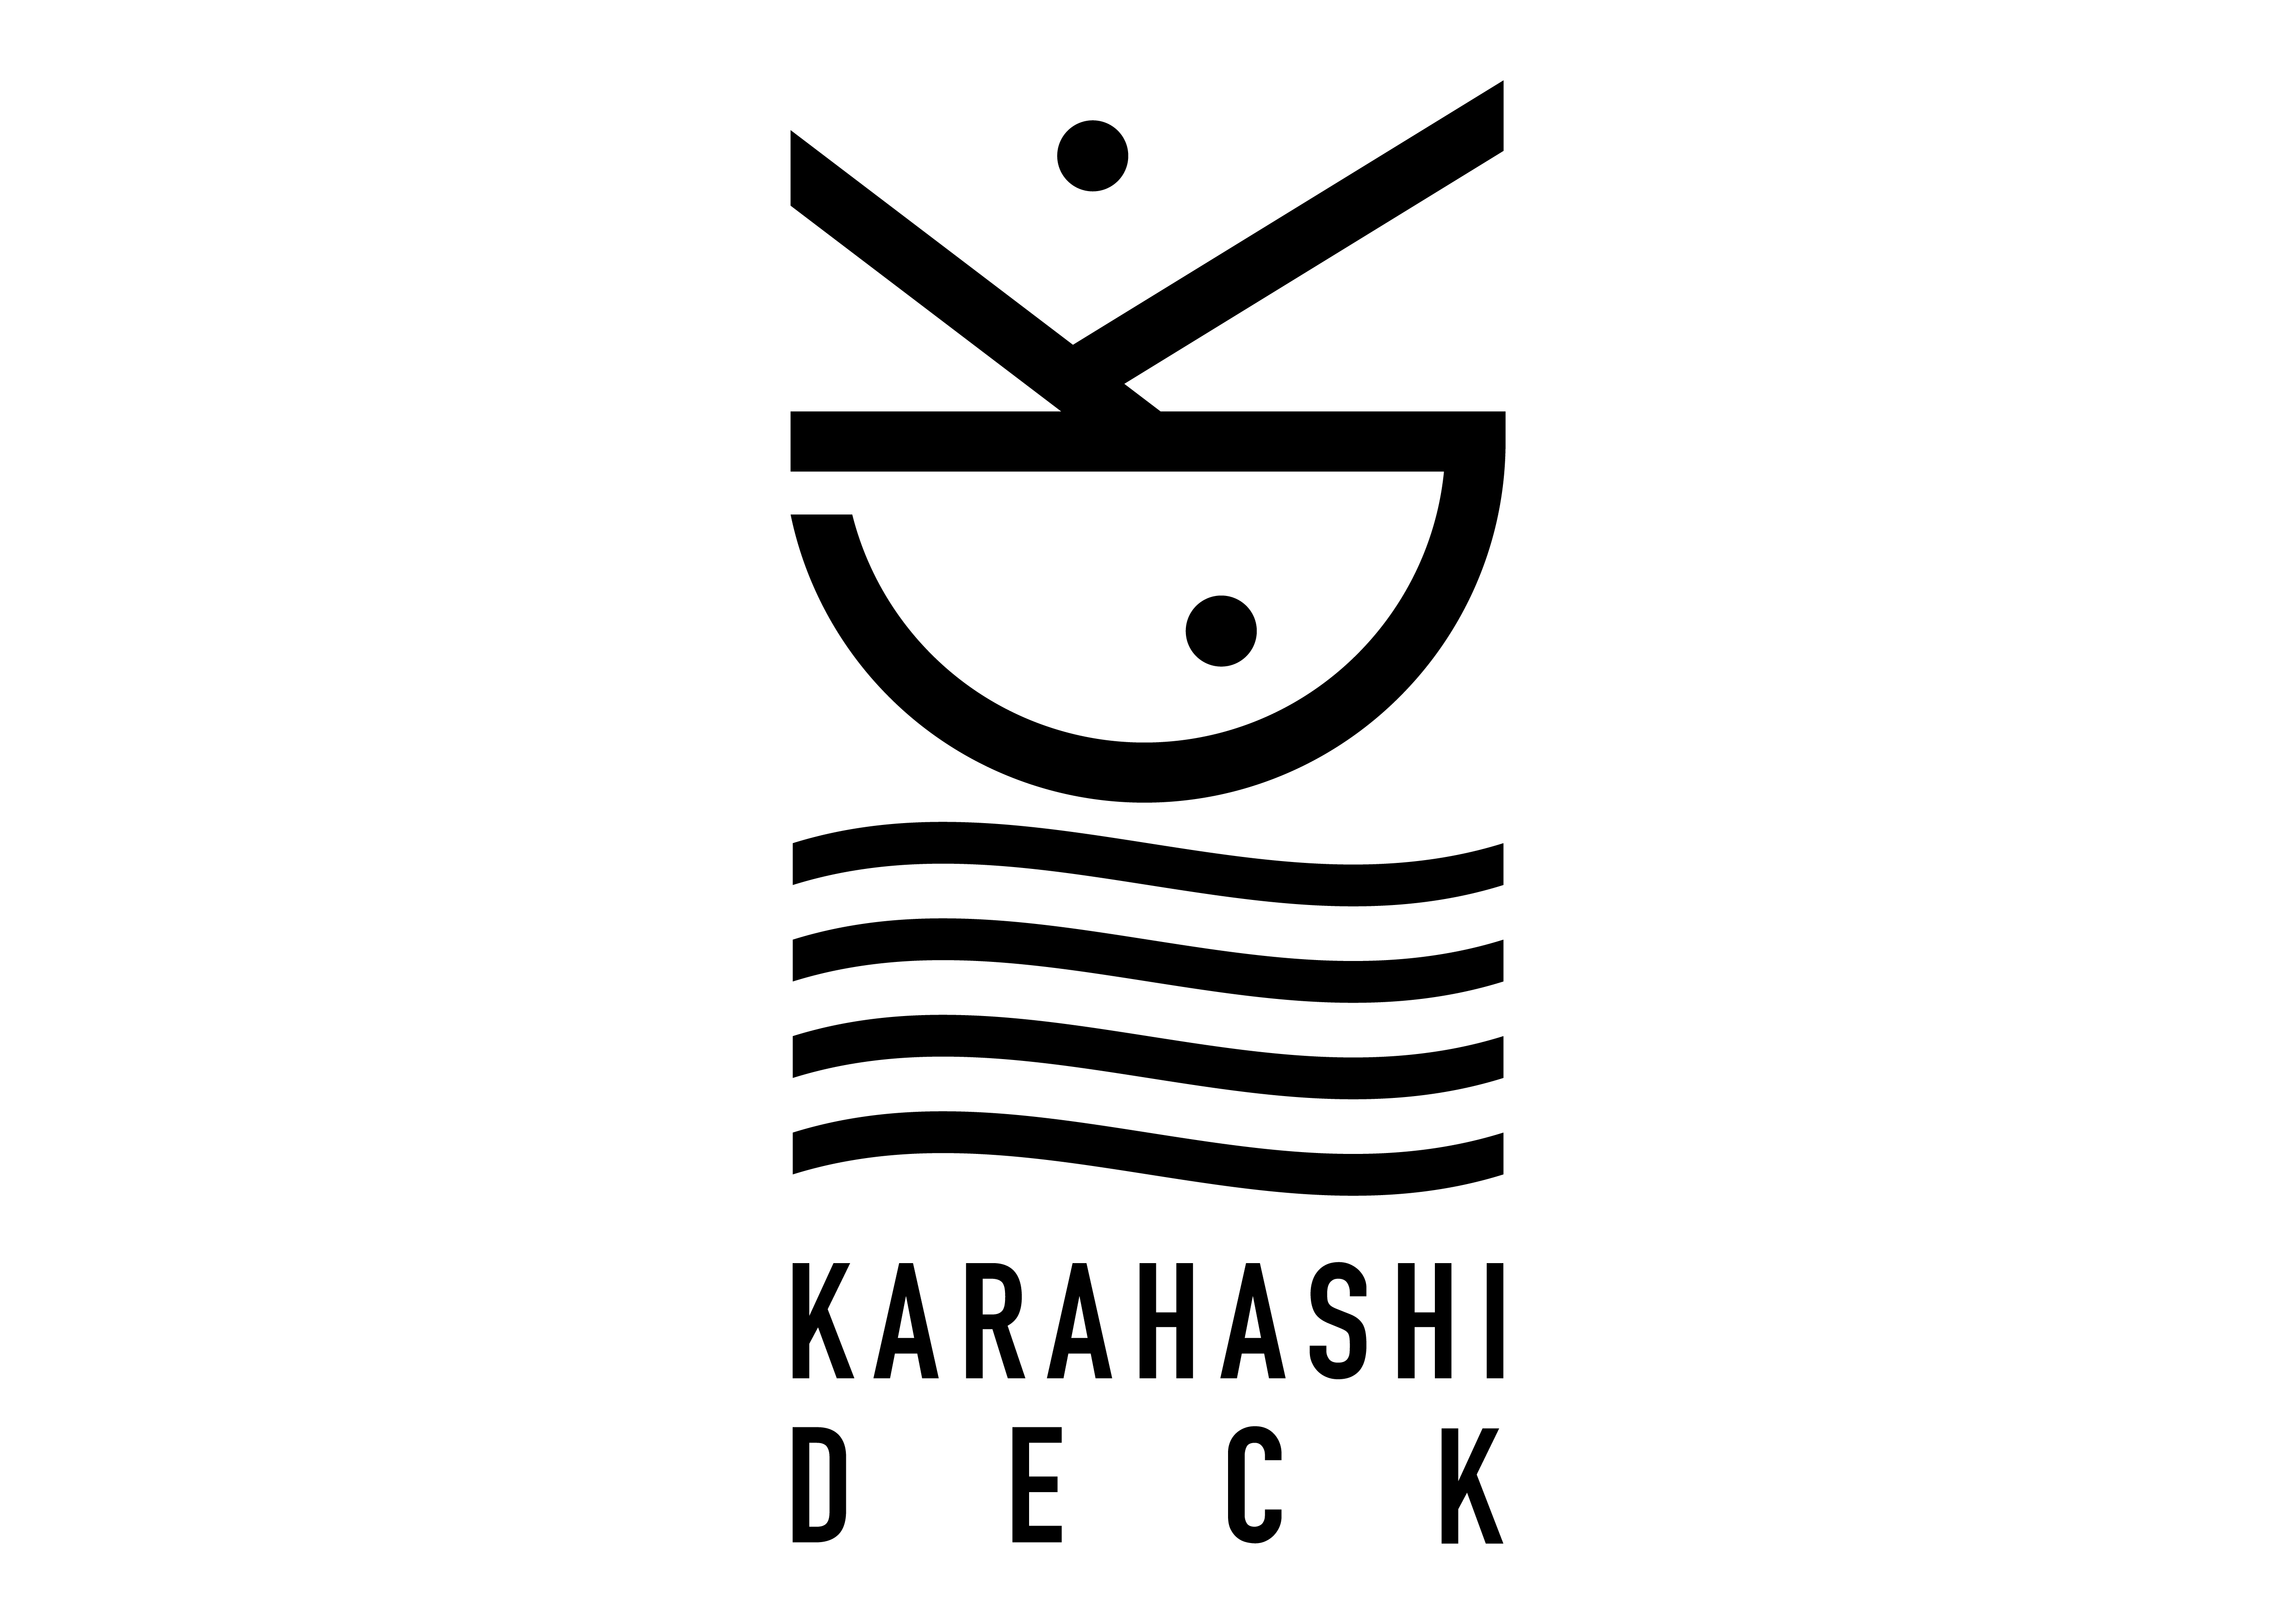 KARAHASHI.DECK